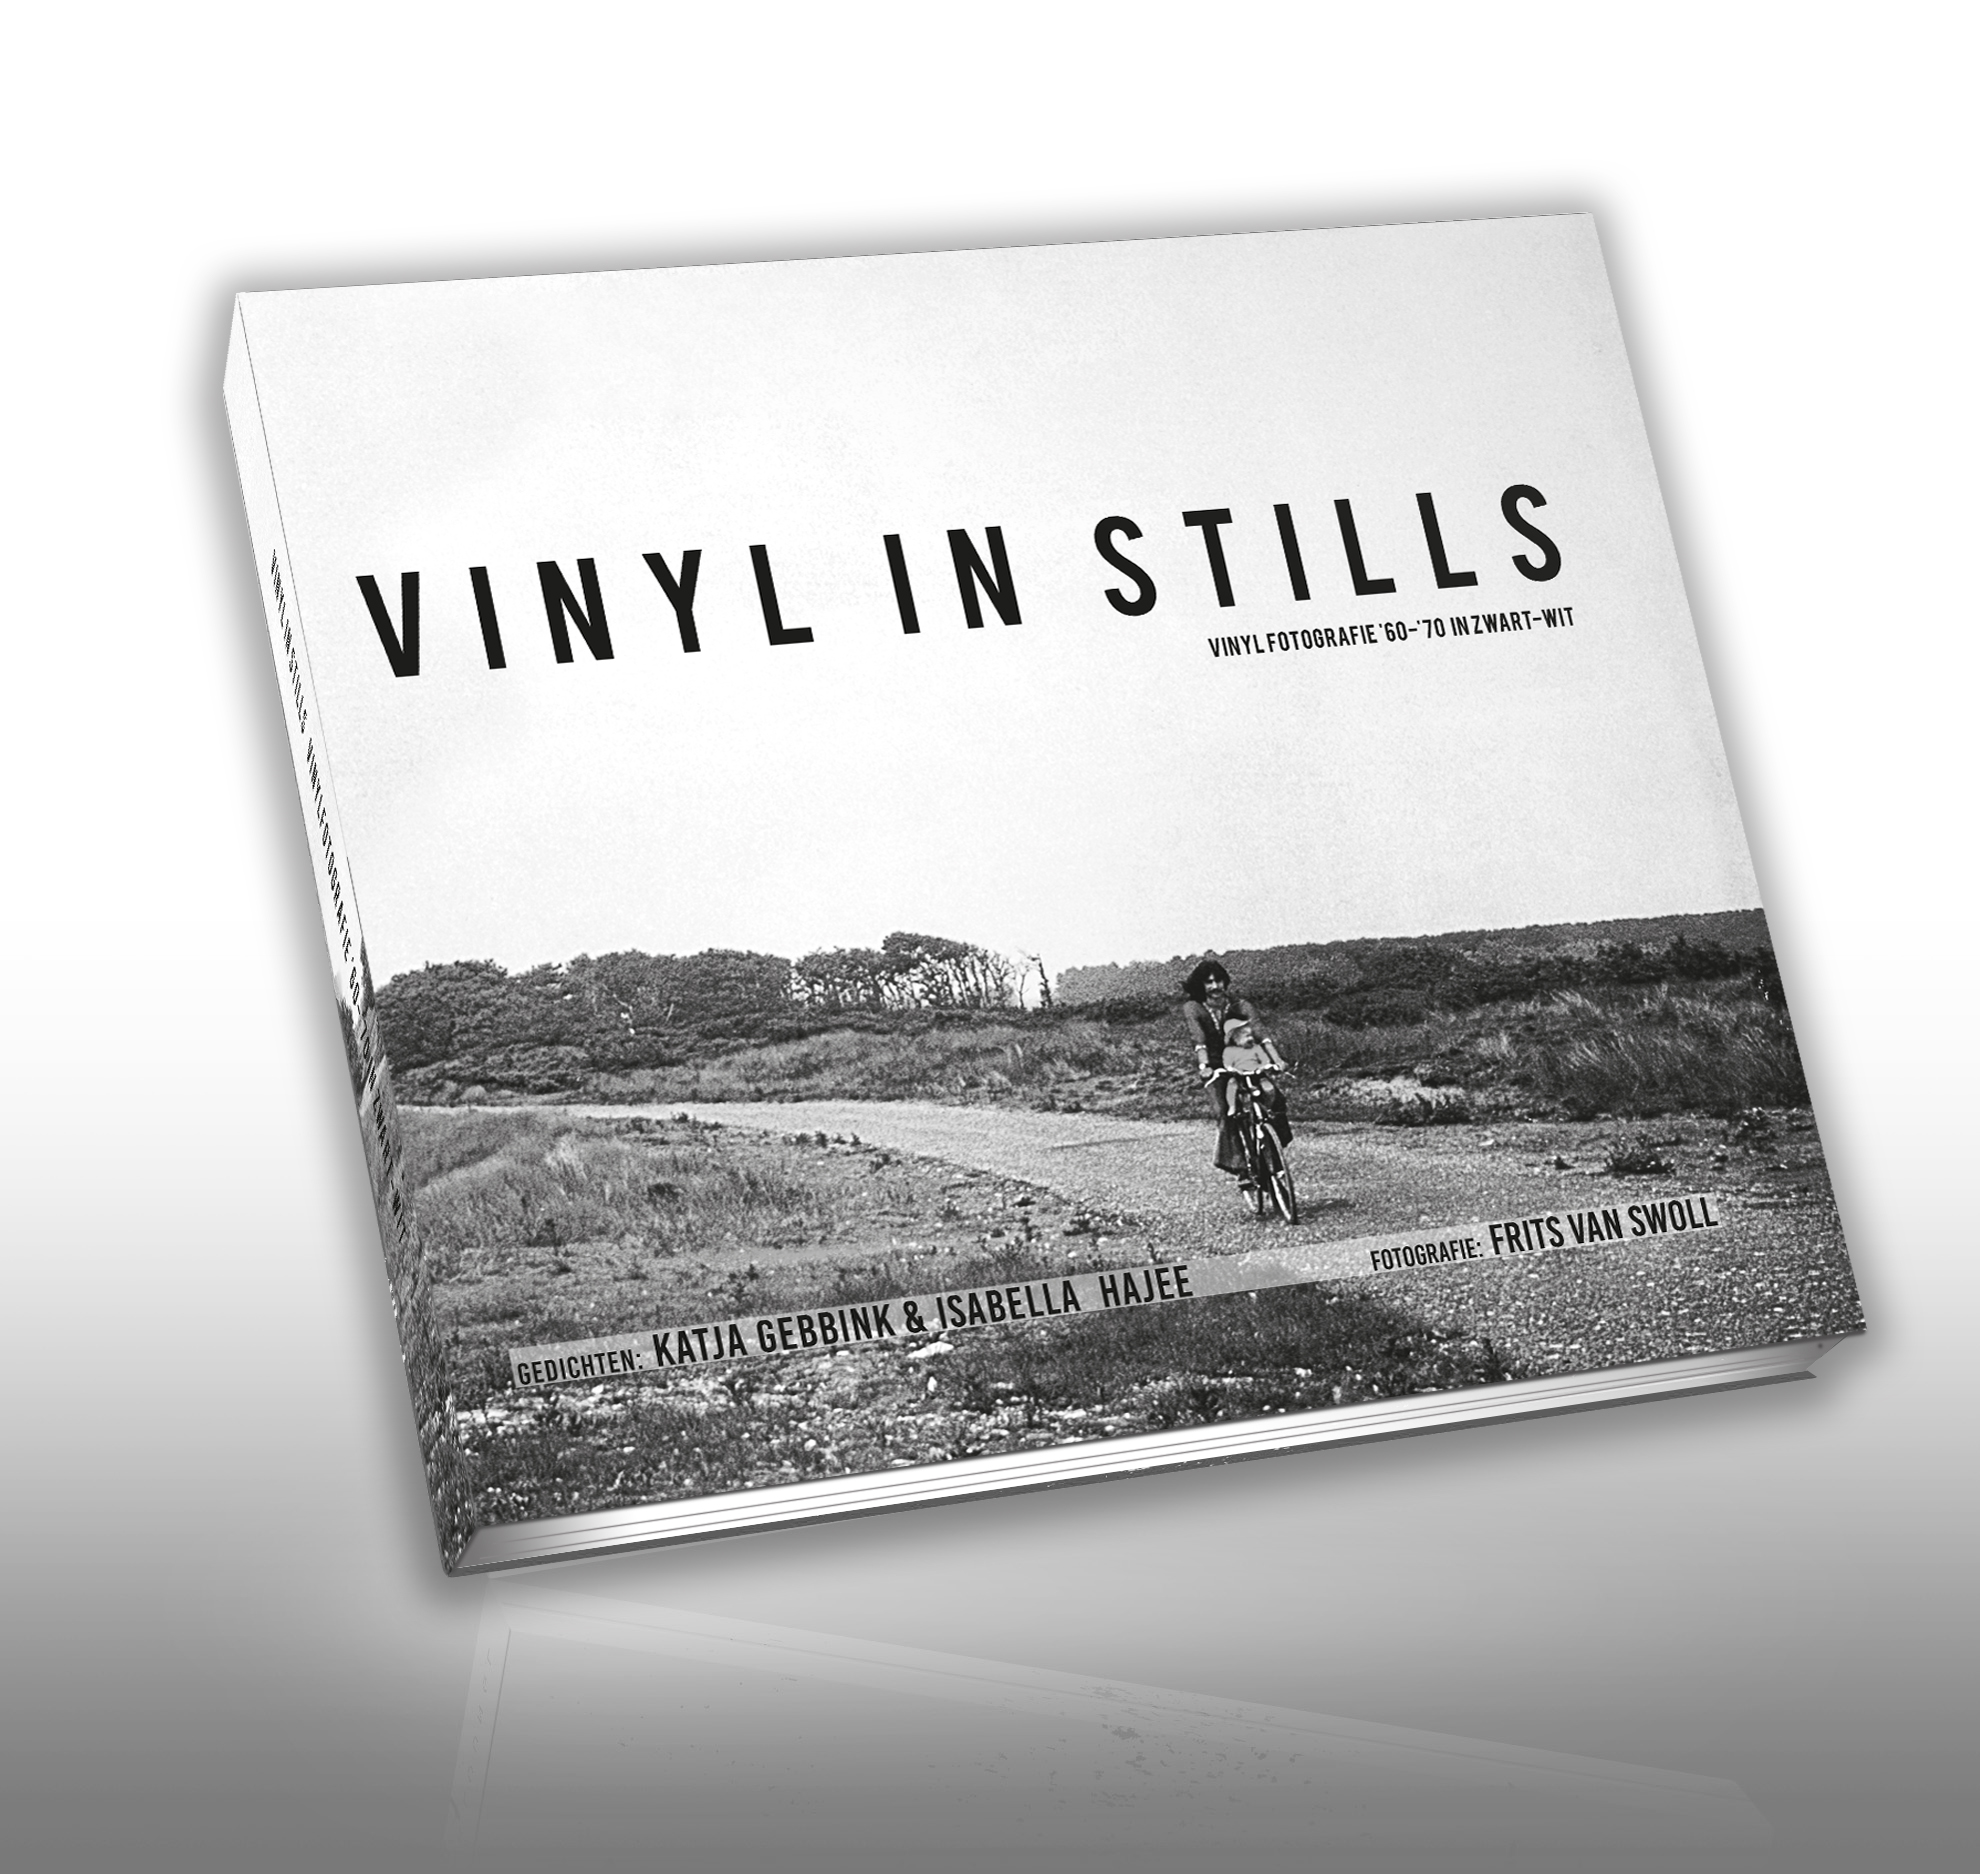 accent Petulance Trouwens Frits van Swoll brengt fotoboek 'Vinyl in Stills' uit